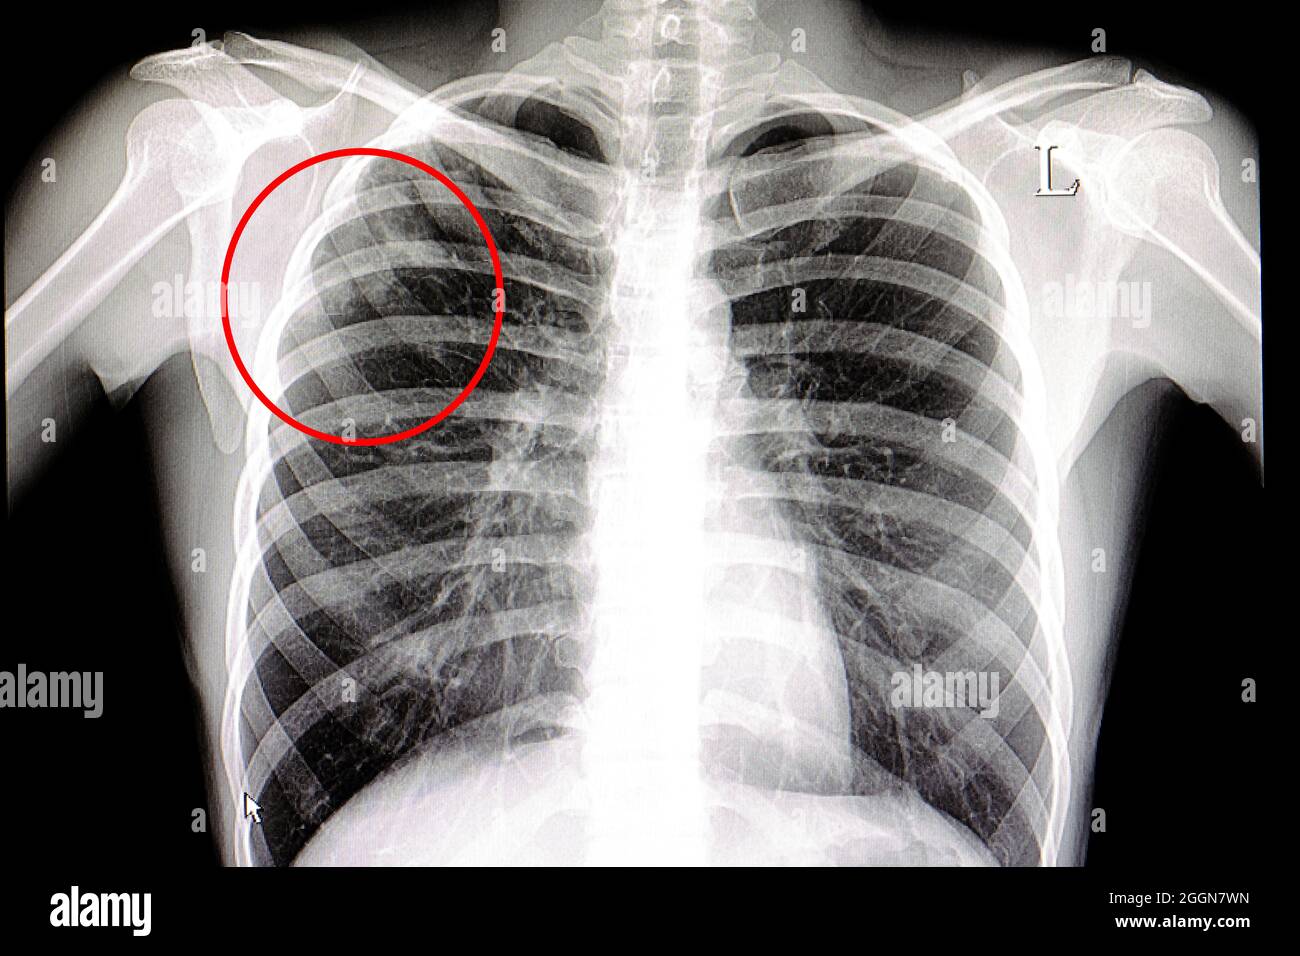 Radiographie d'un patient atteint de tuberculose pulmonaire Photo Stock -  Alamy